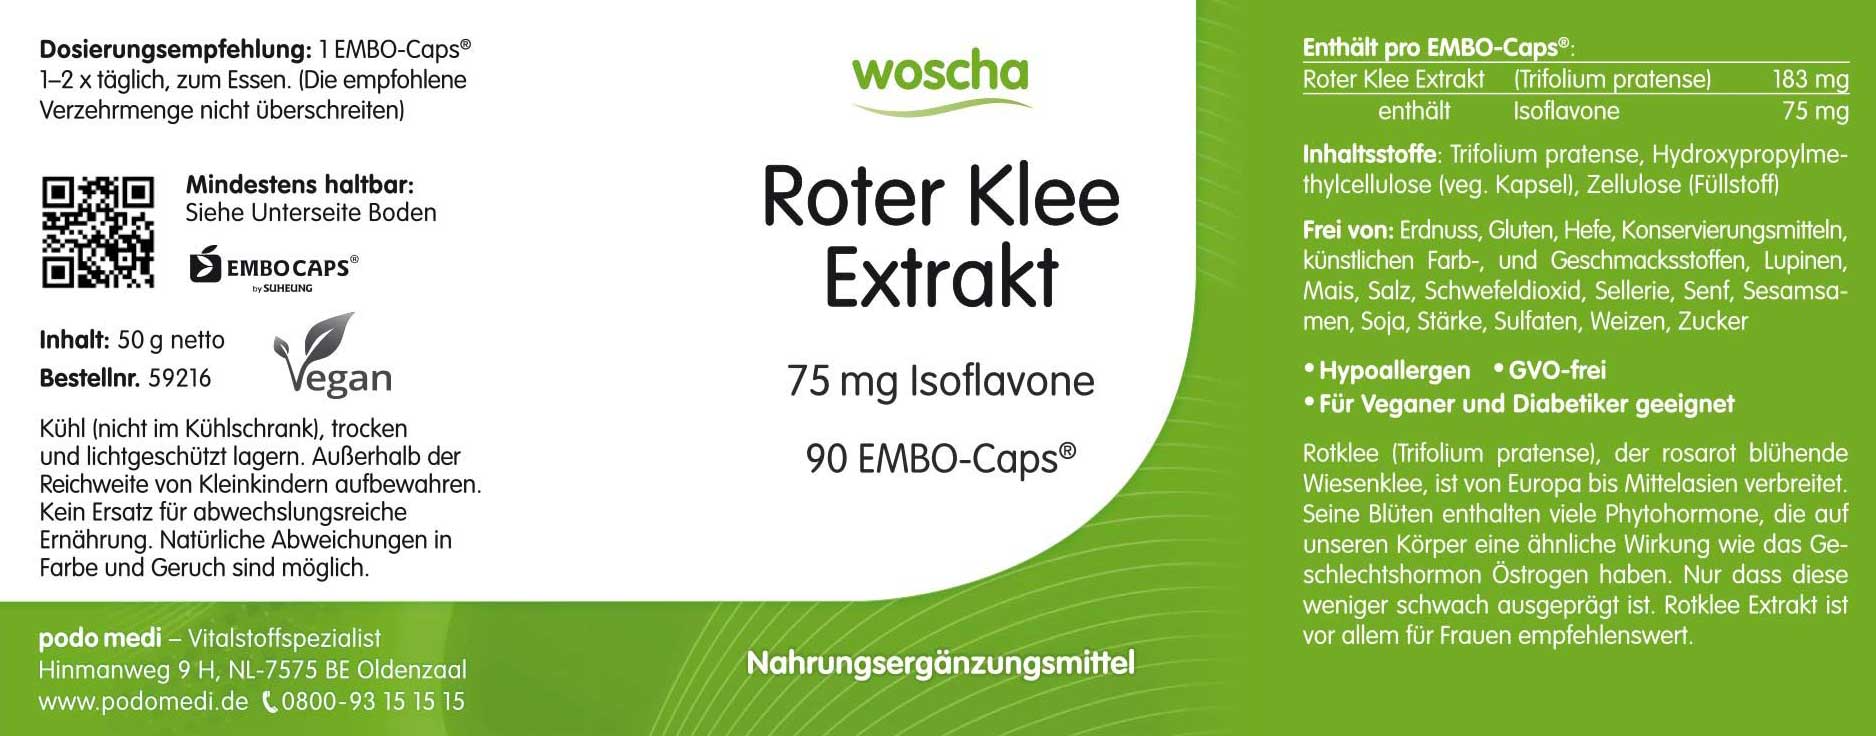 Woscha Roter Klee Extrakt von podo medi beinhaltet 90 Kapseln Etikett